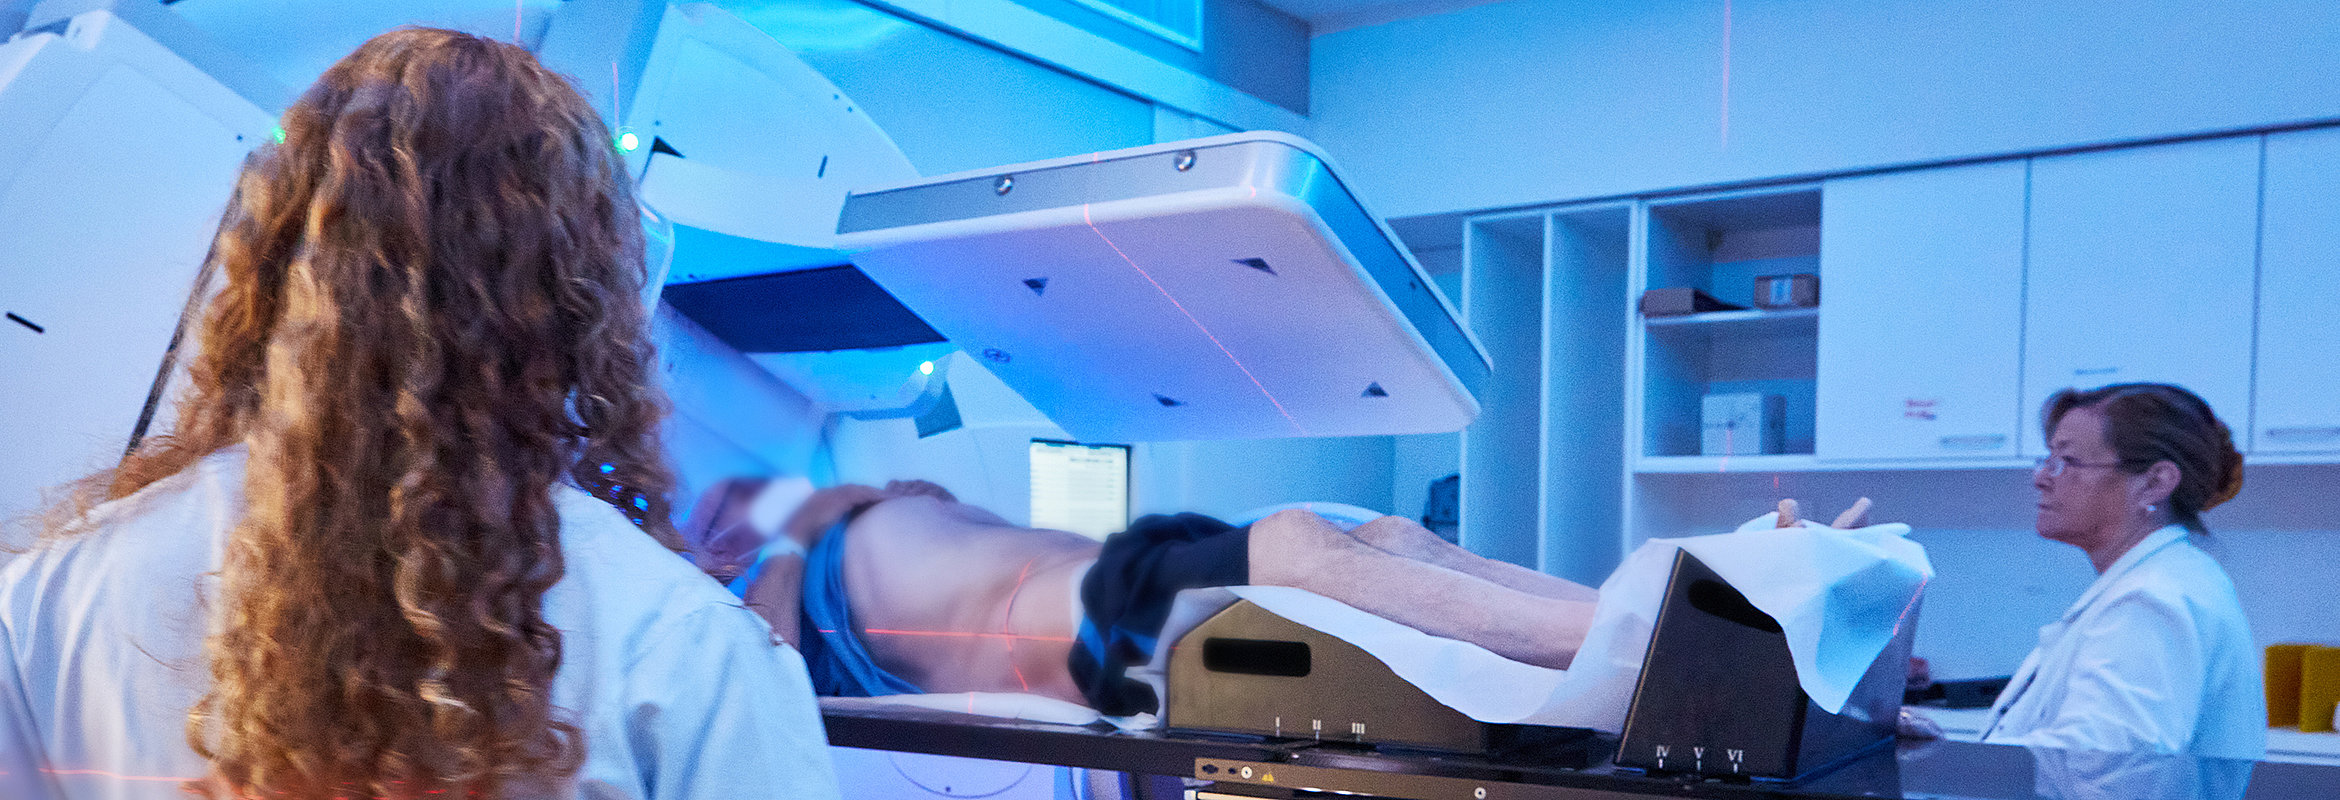 Bestrahlung in der Klinik für Strahlentherapie in Kaiserslautern